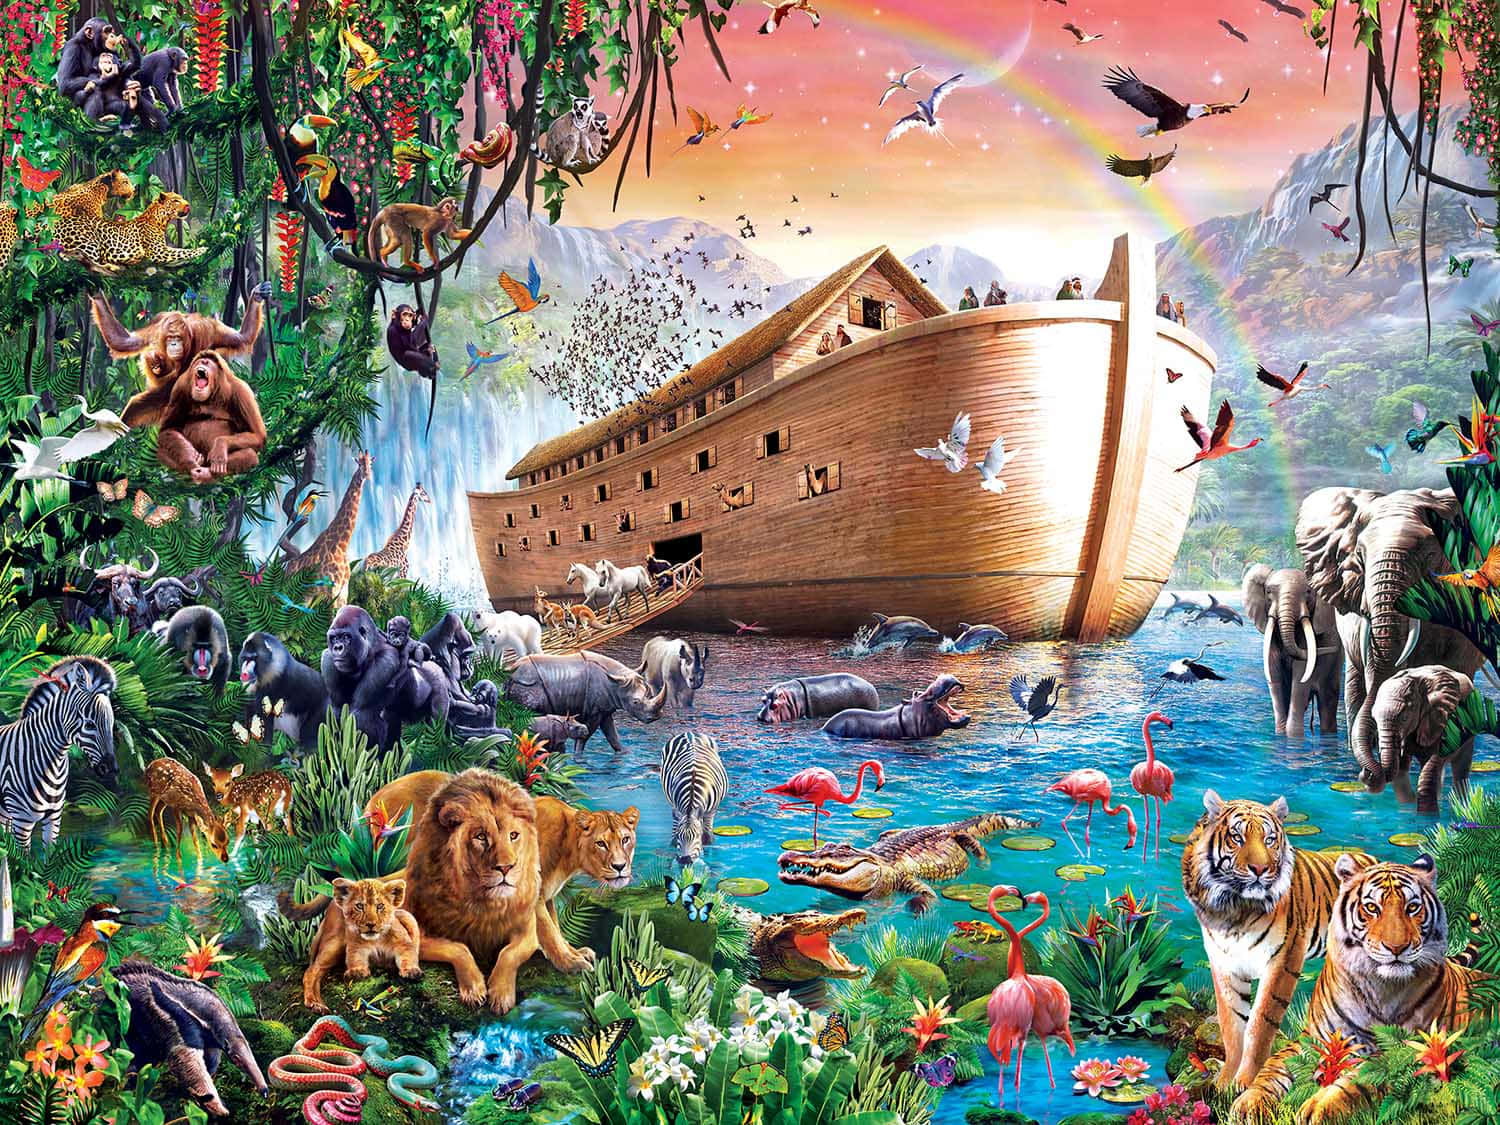 [100+] Noah's Ark Pictures | Wallpapers.com